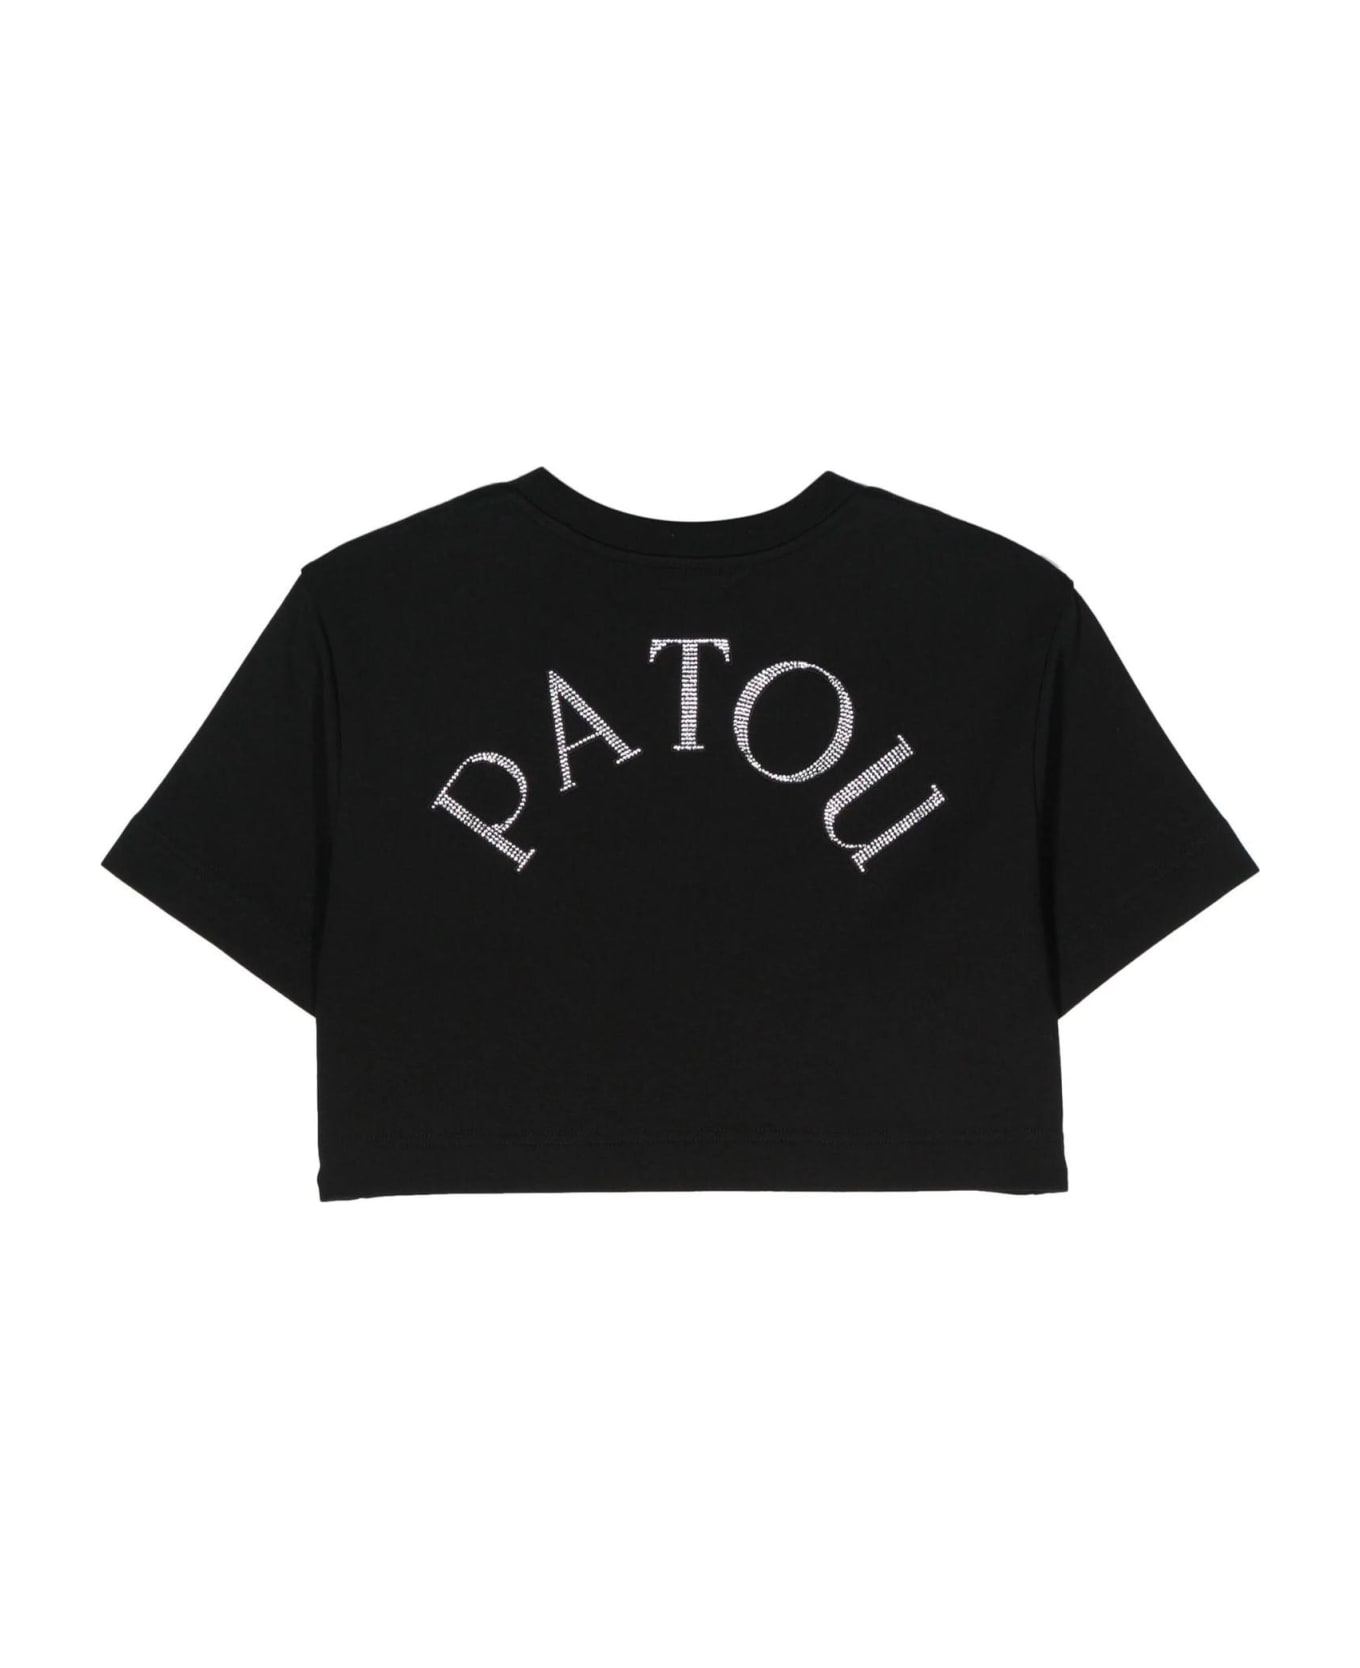 Patou Black Organic Cotton T-shirt - B Black